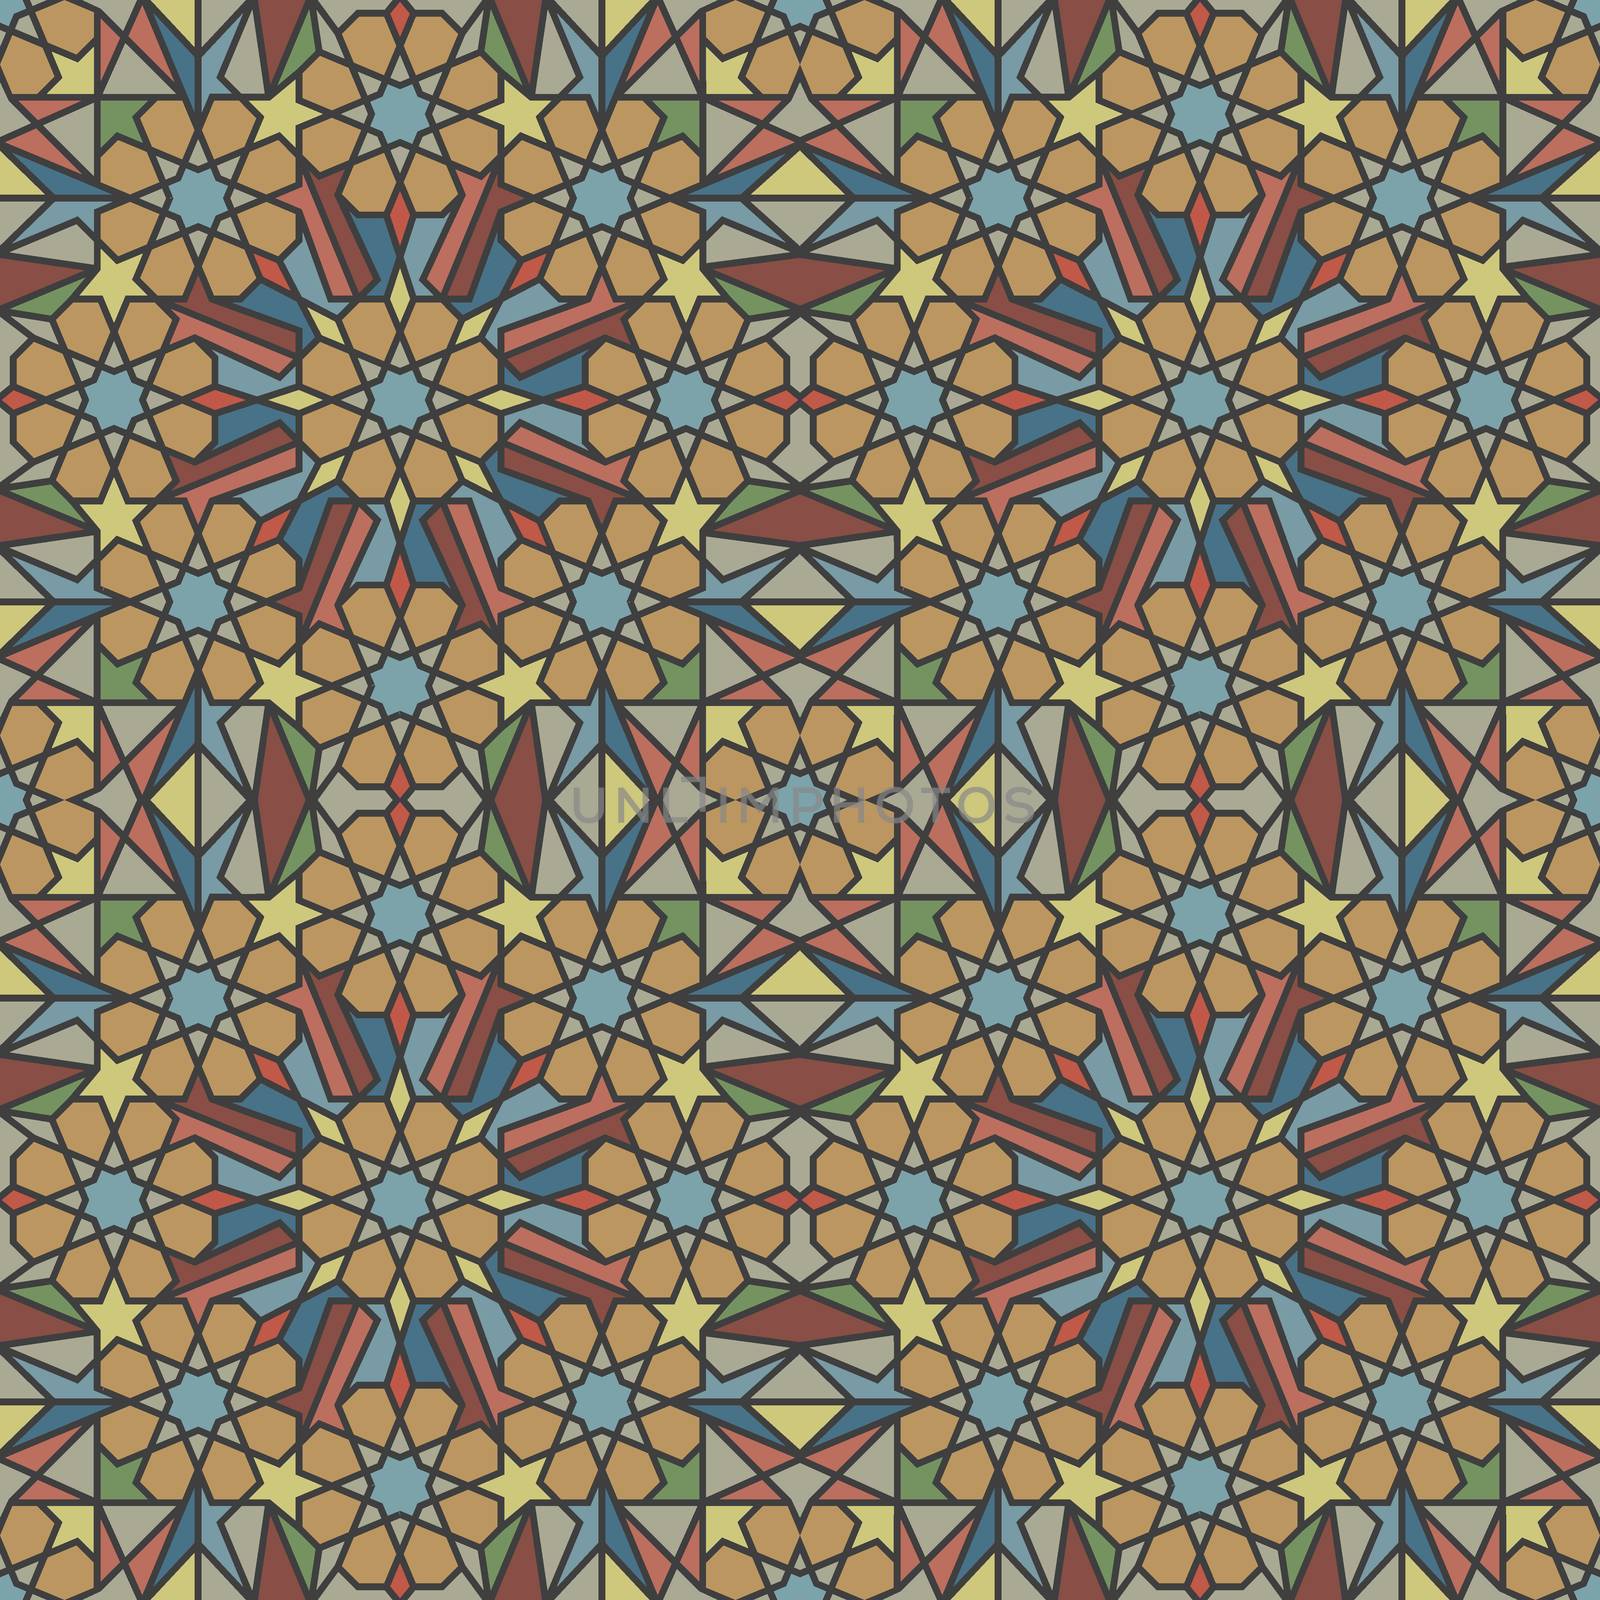 Arabic tiles by Portokalis